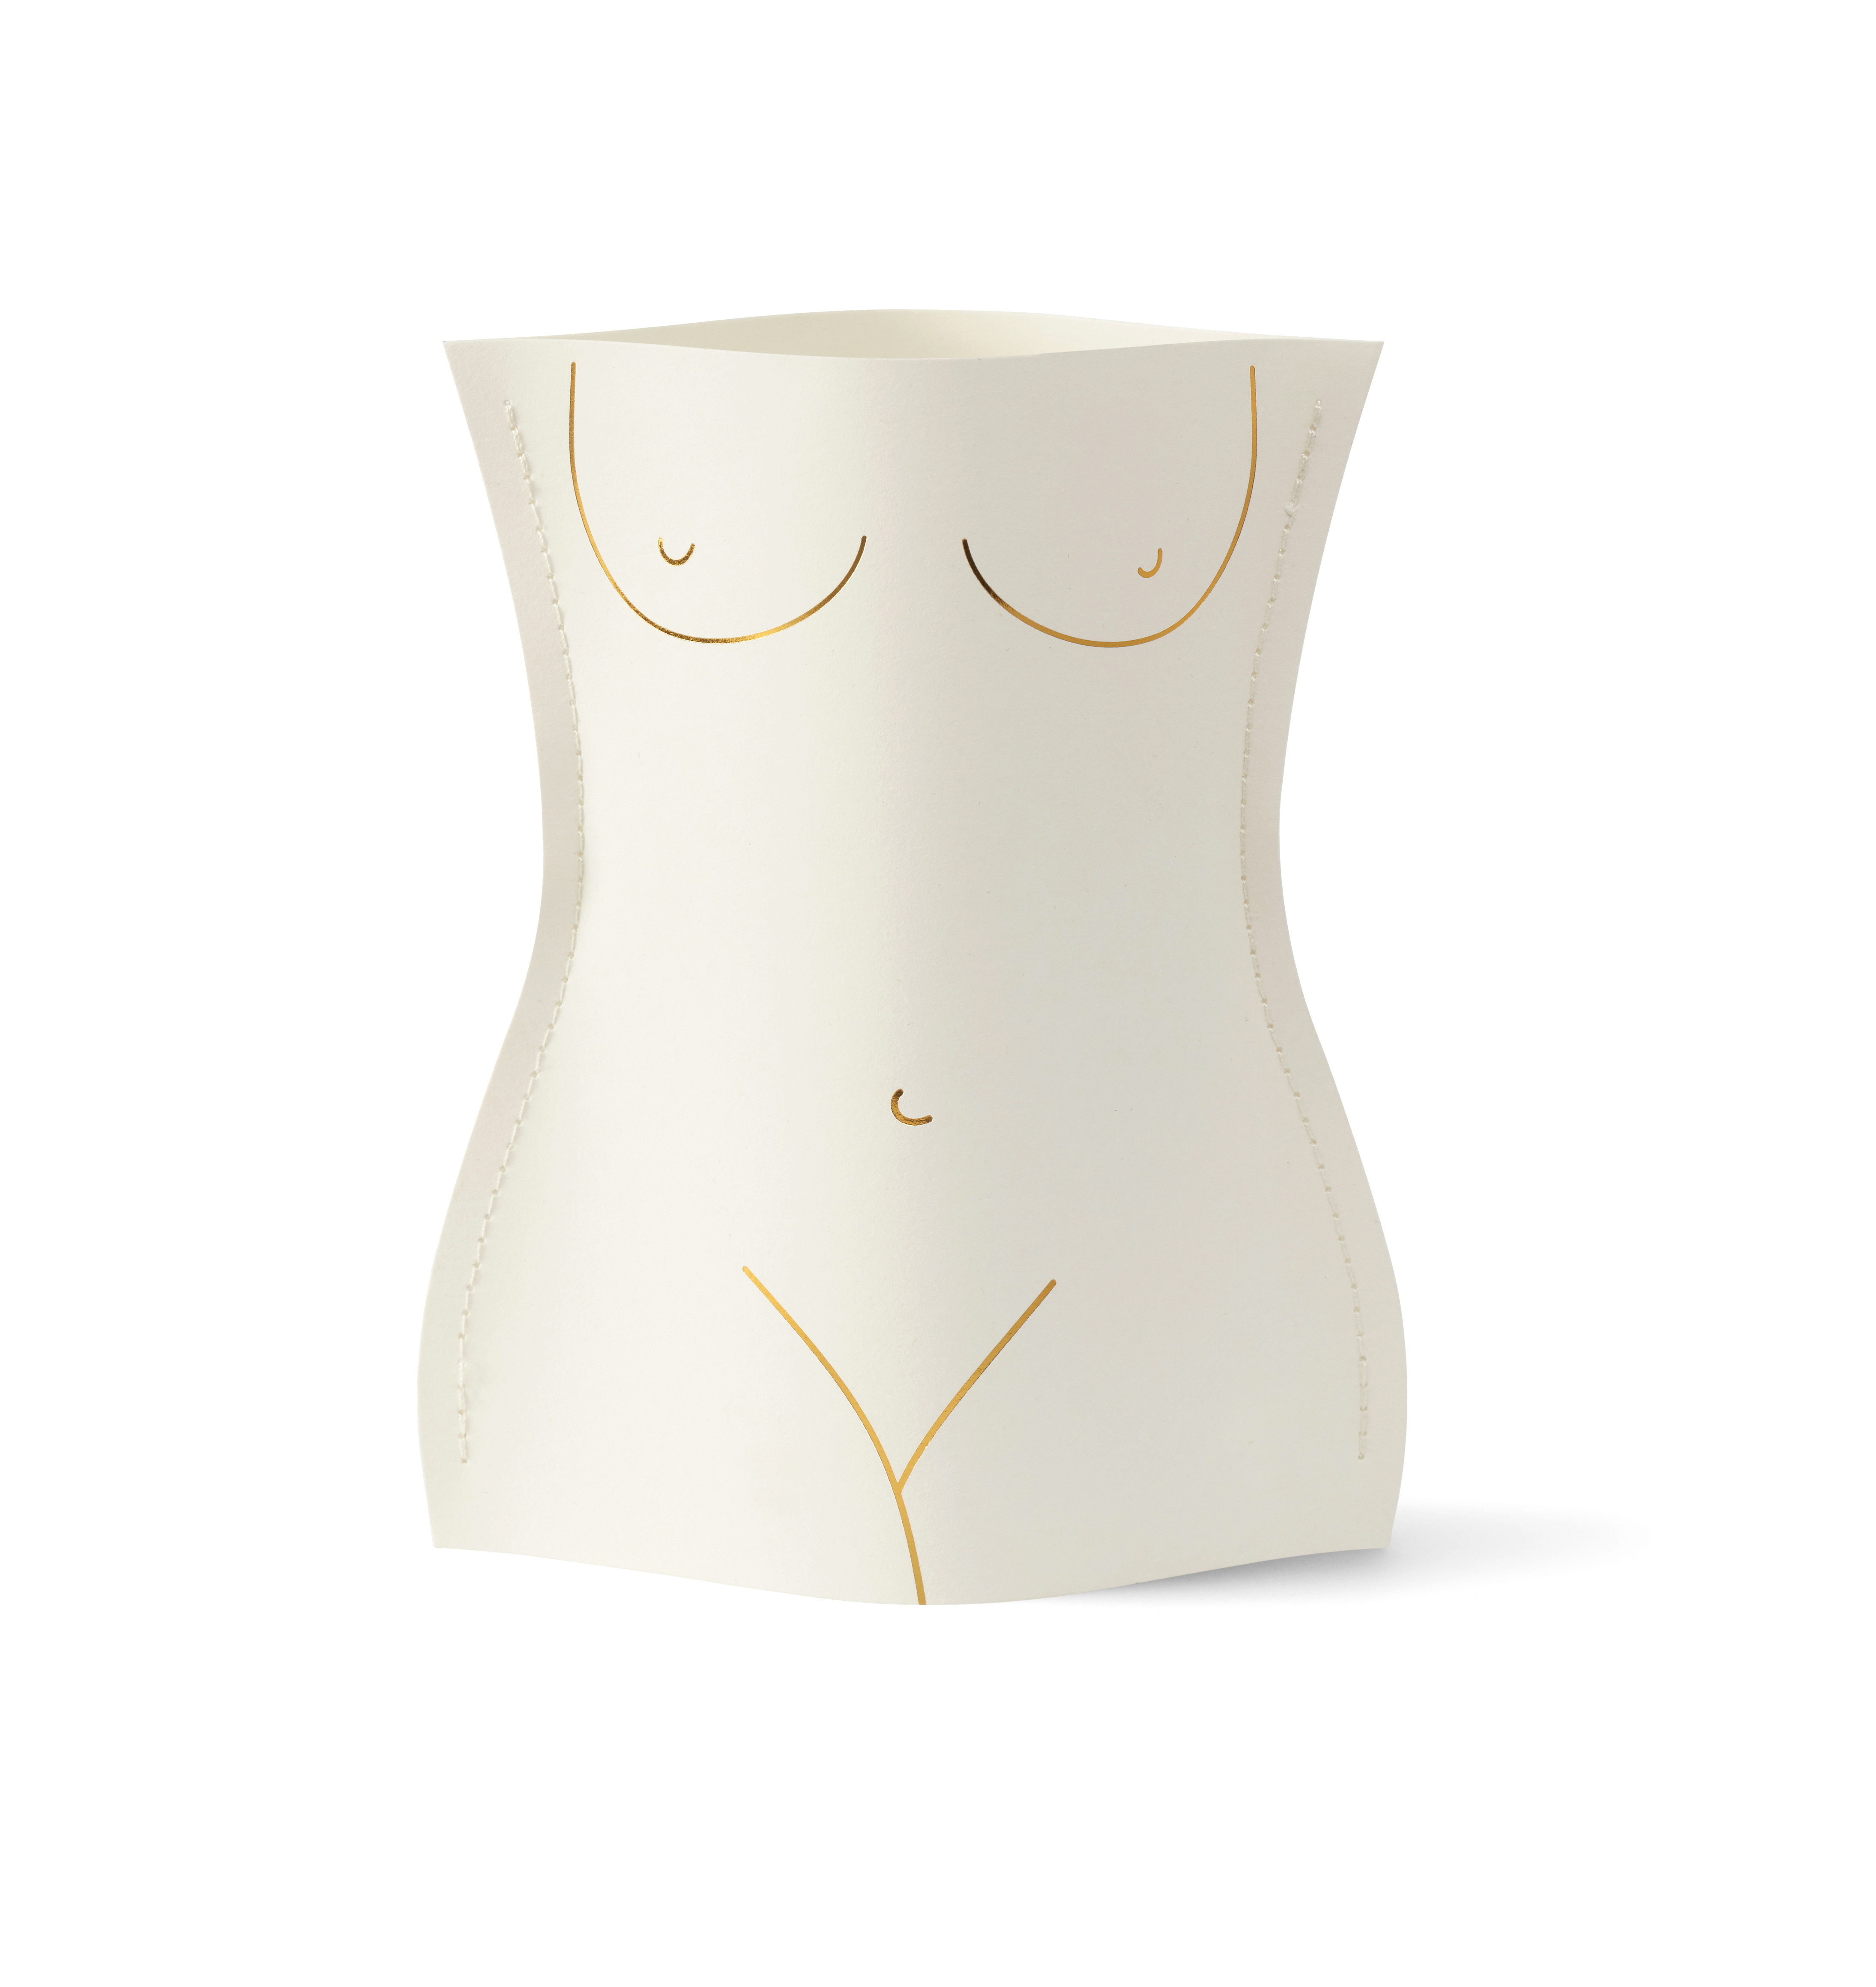 OMPVVES-19 - Mini Paper Vase Venus